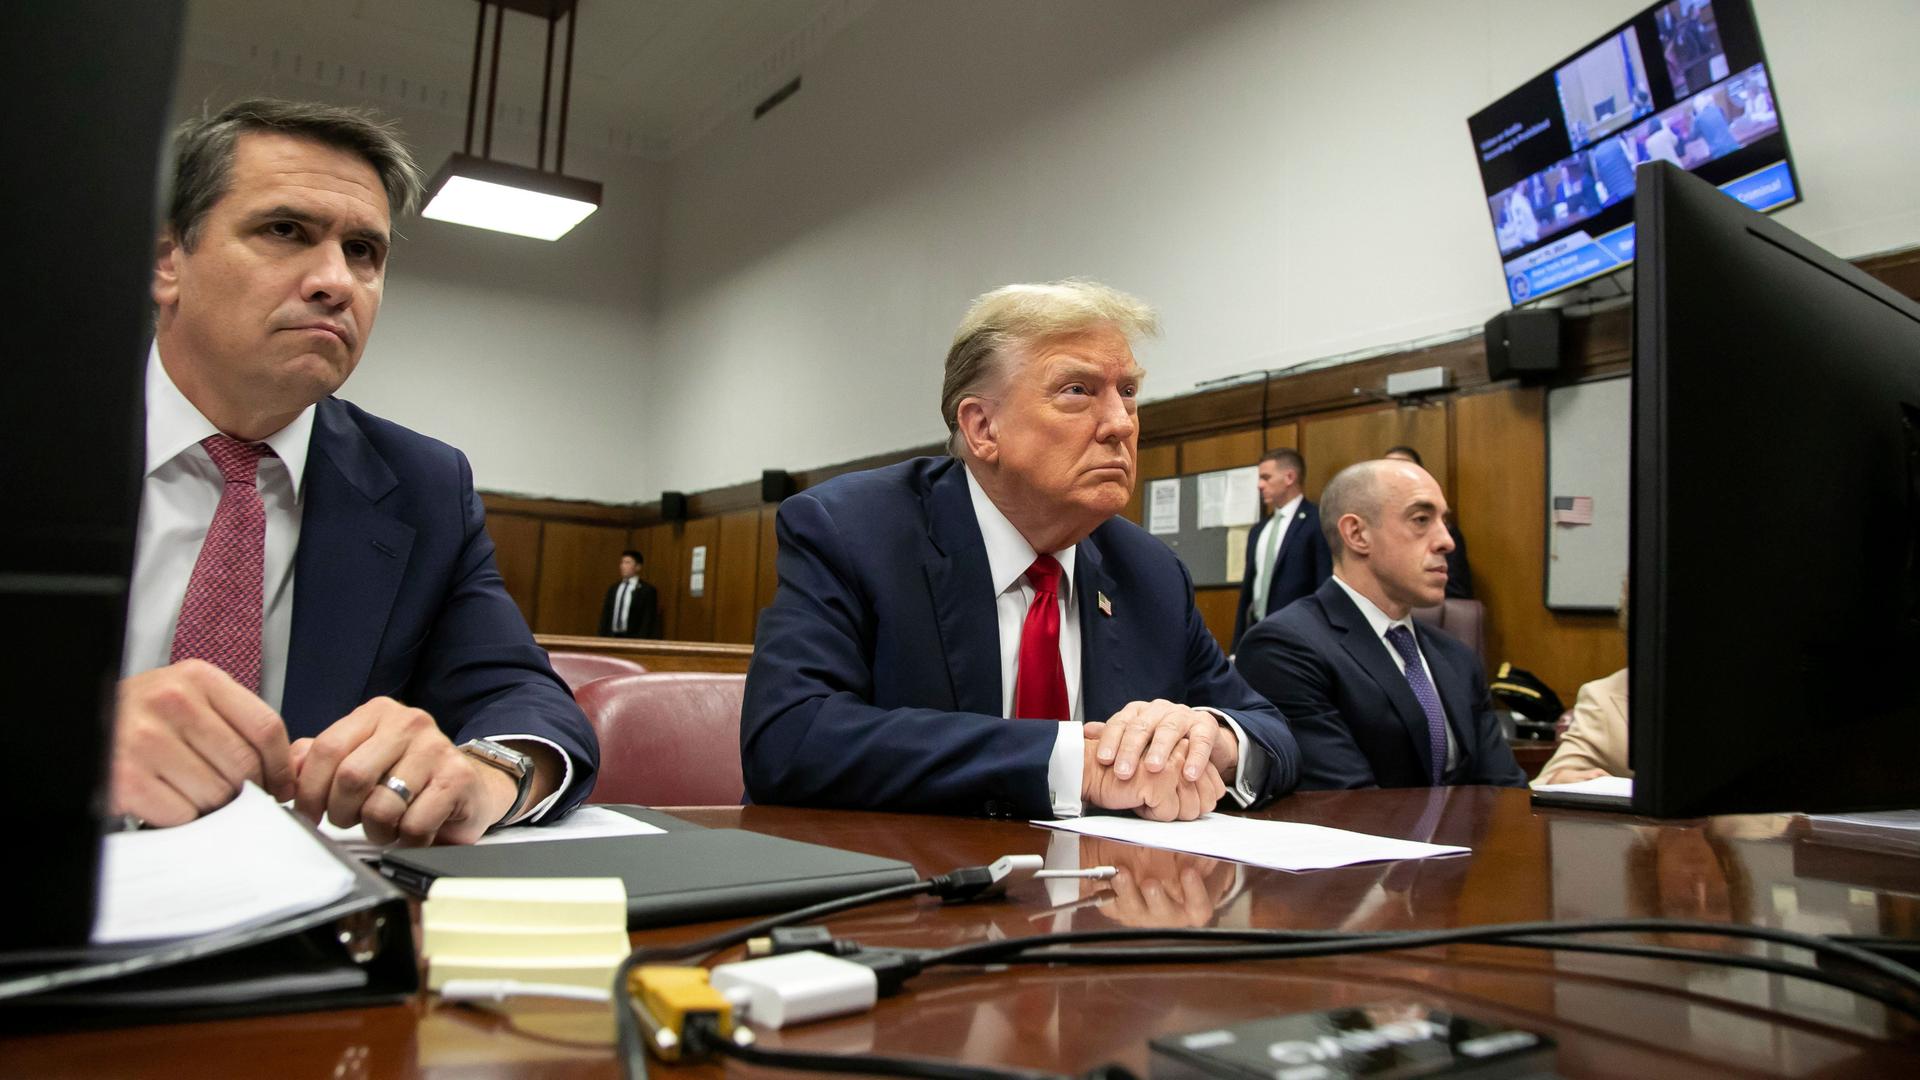 Der frühere US-Präsident Trump sitzt in einem Gericht in New York an einem Tisch. Seine aufeinander gelegten Hände liegen auf einem Blatt Papier.